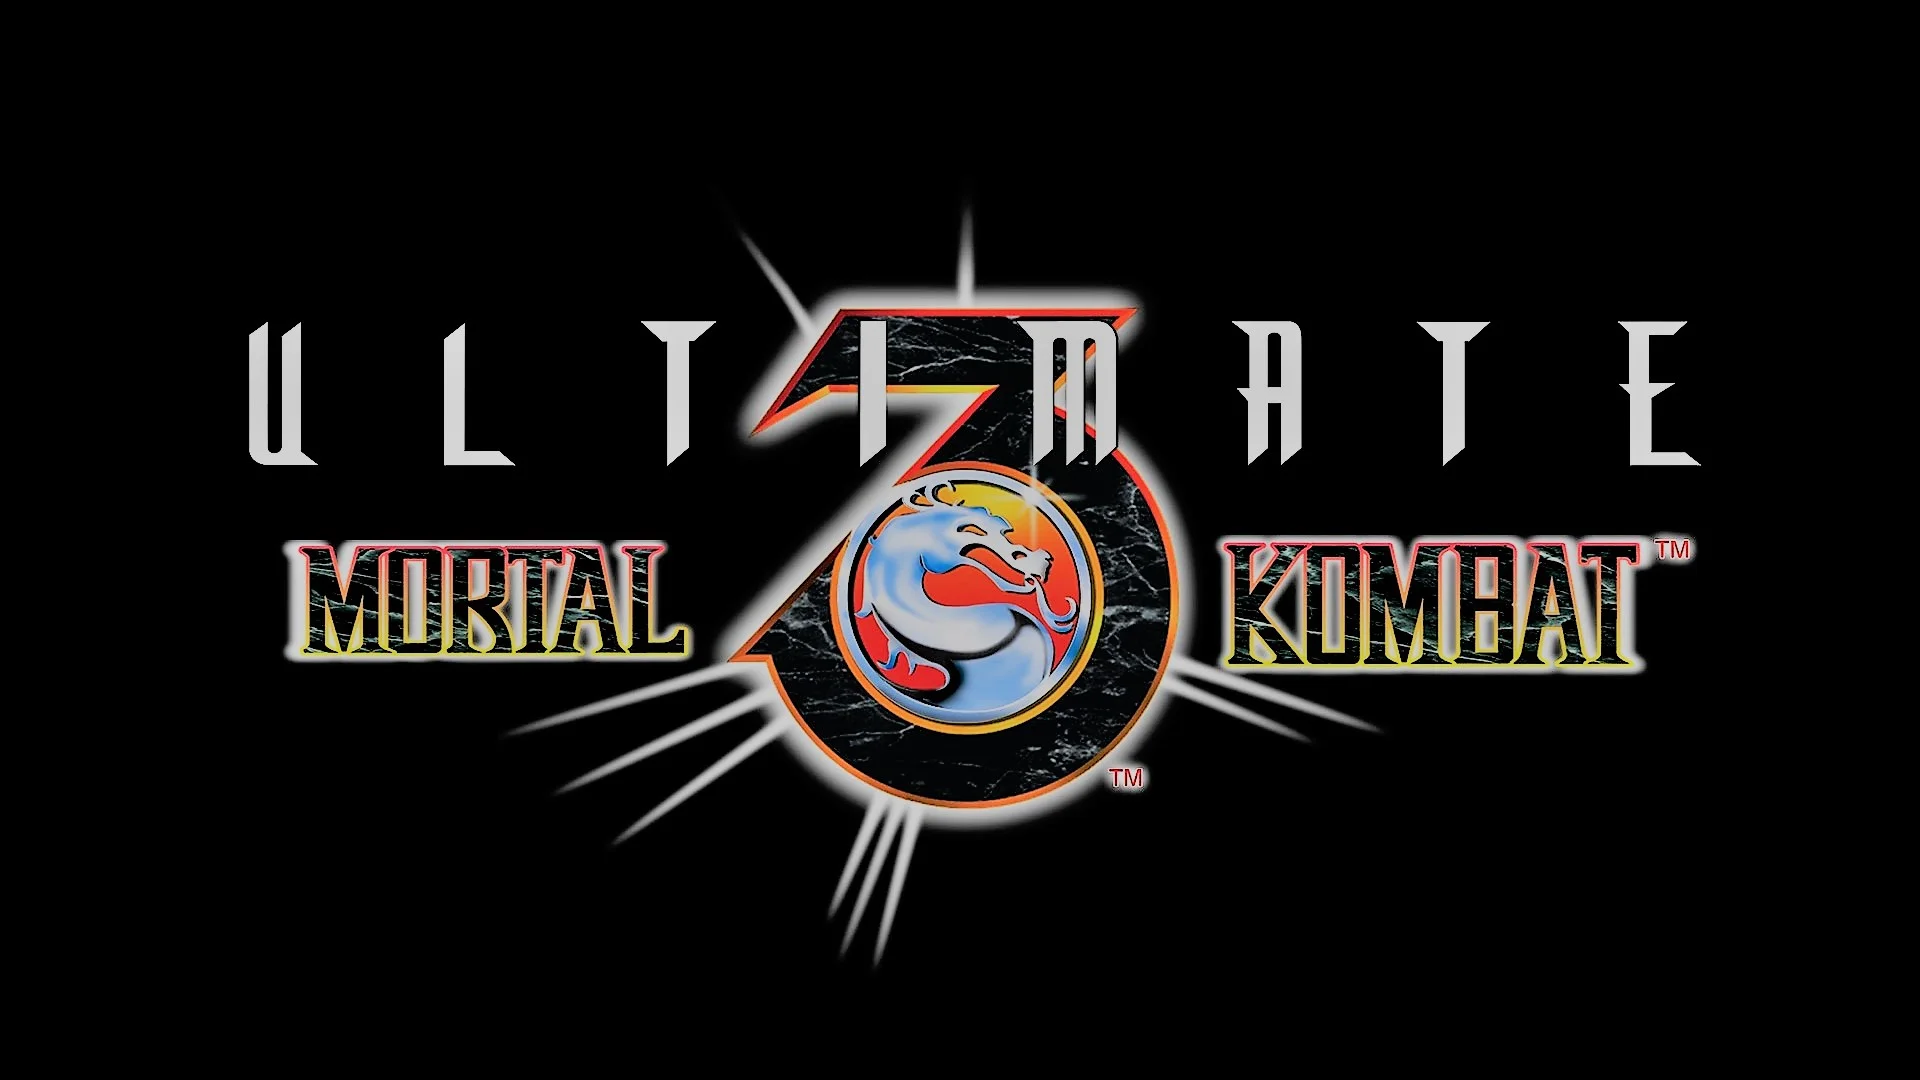 Многие до сих пор считают Ultimate Mortal Kombat 3 лучшей частью серии. Файтинг в свое время привлекал простотой и жестокостью. Фаталити тогда просто поражали! Но вот сможешь ли ты вспомнить их даже сейчас? Проверь это в нашем невероятно сложном тесте!